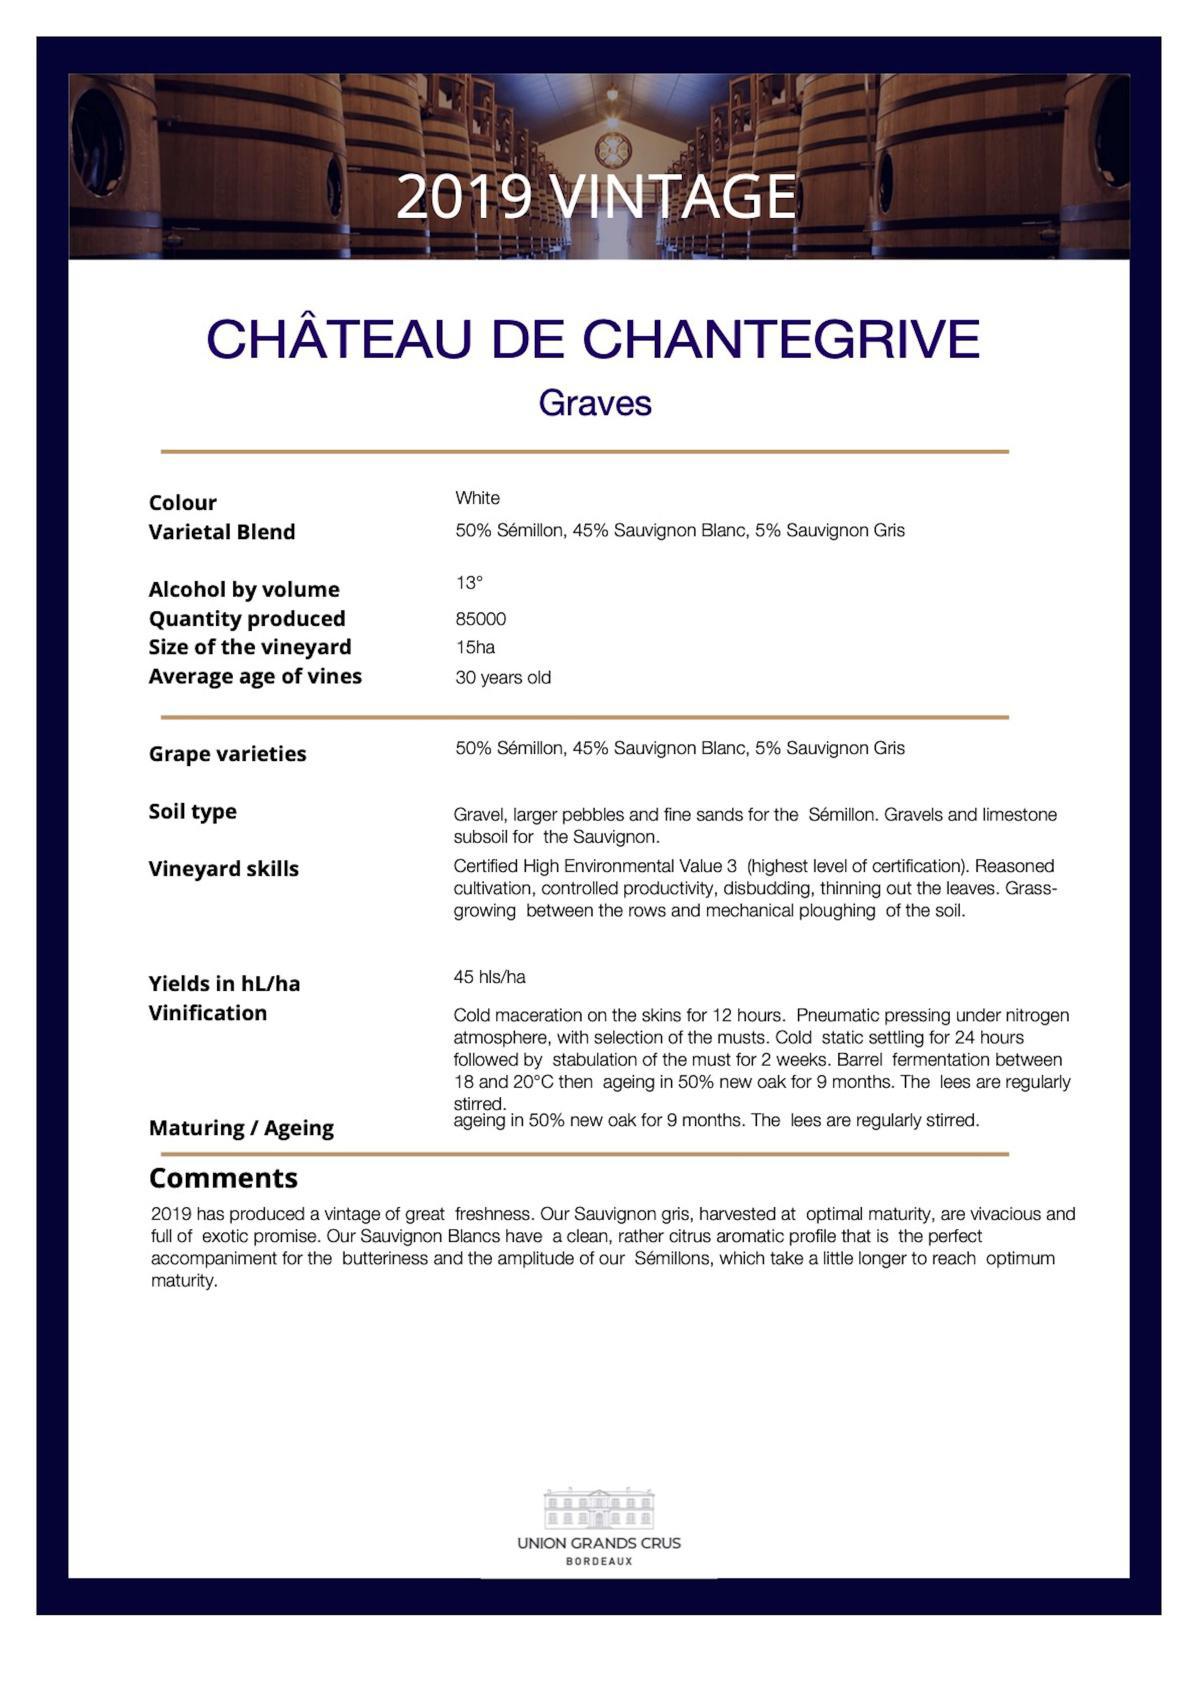 Château de Chantegrive - White